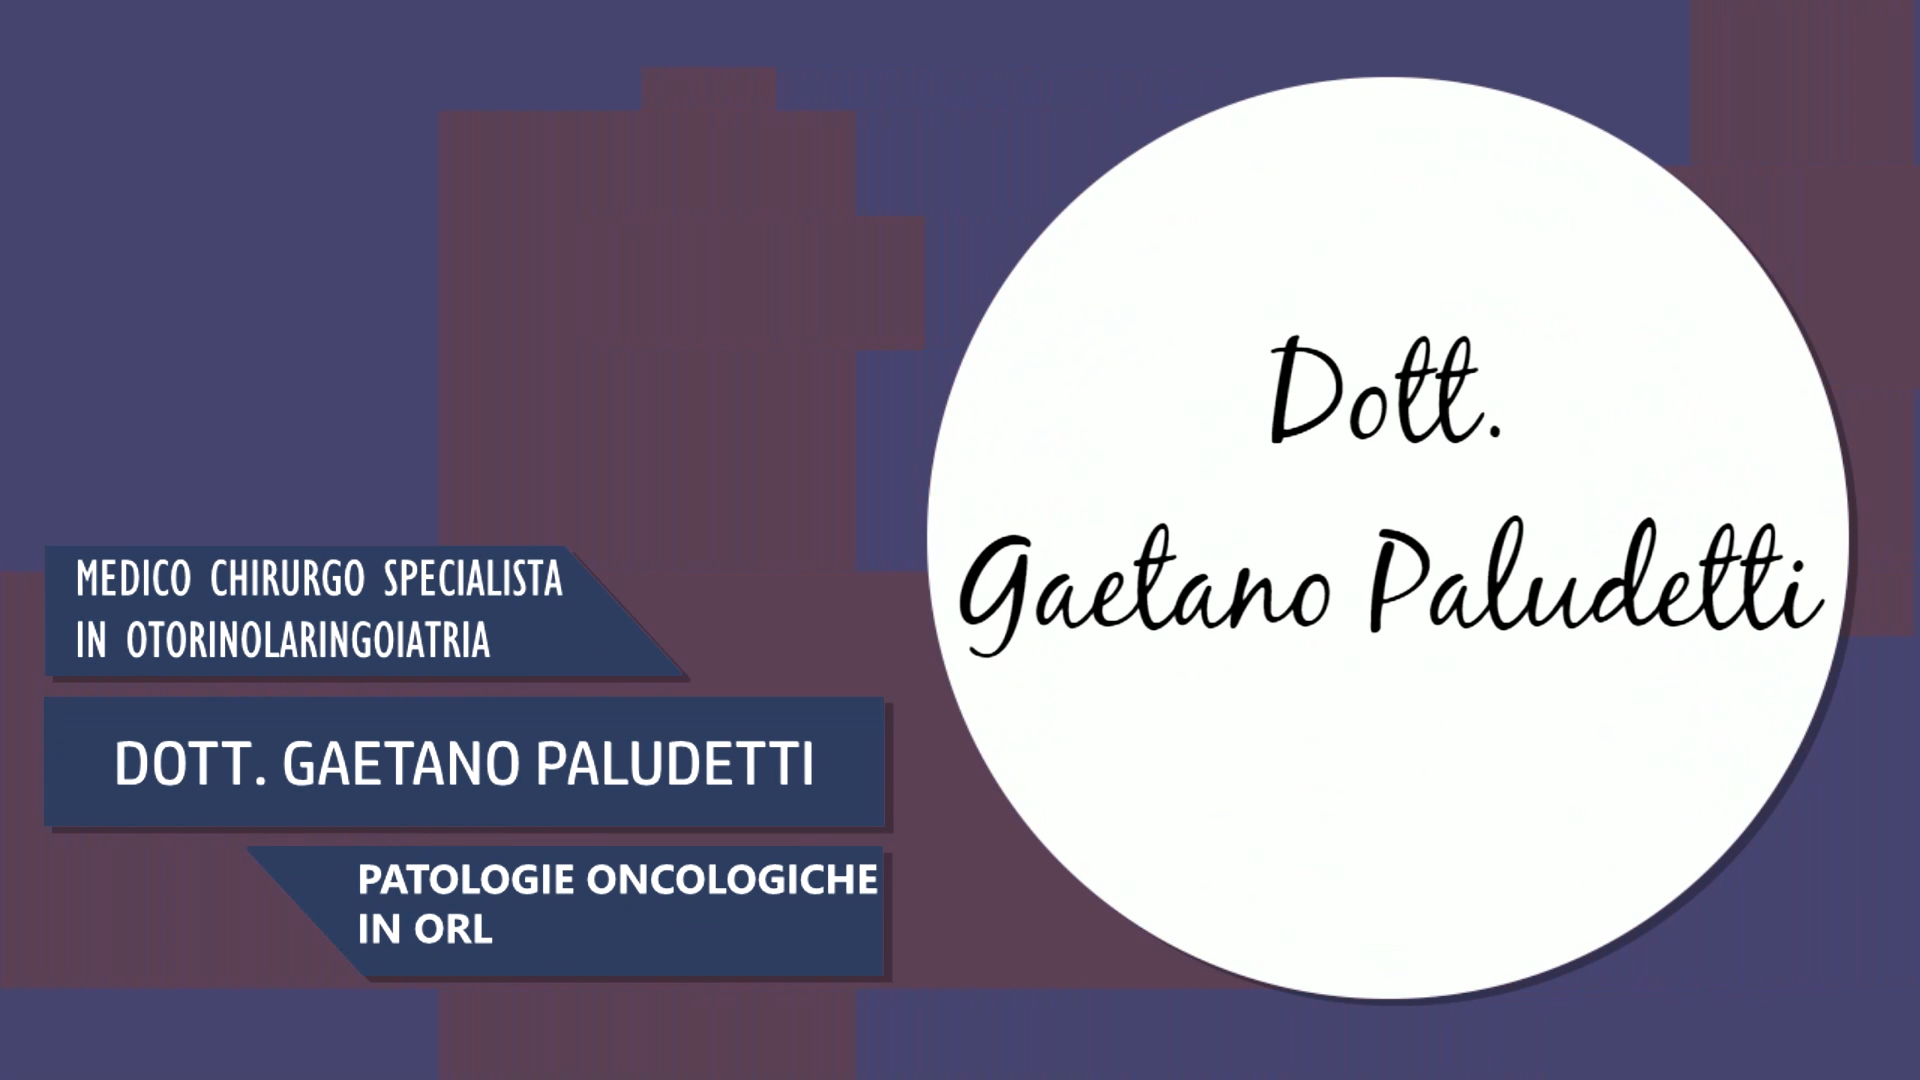 Intervista al Dott. Gaetano Paludetti – Patologie oncologiche in ORL